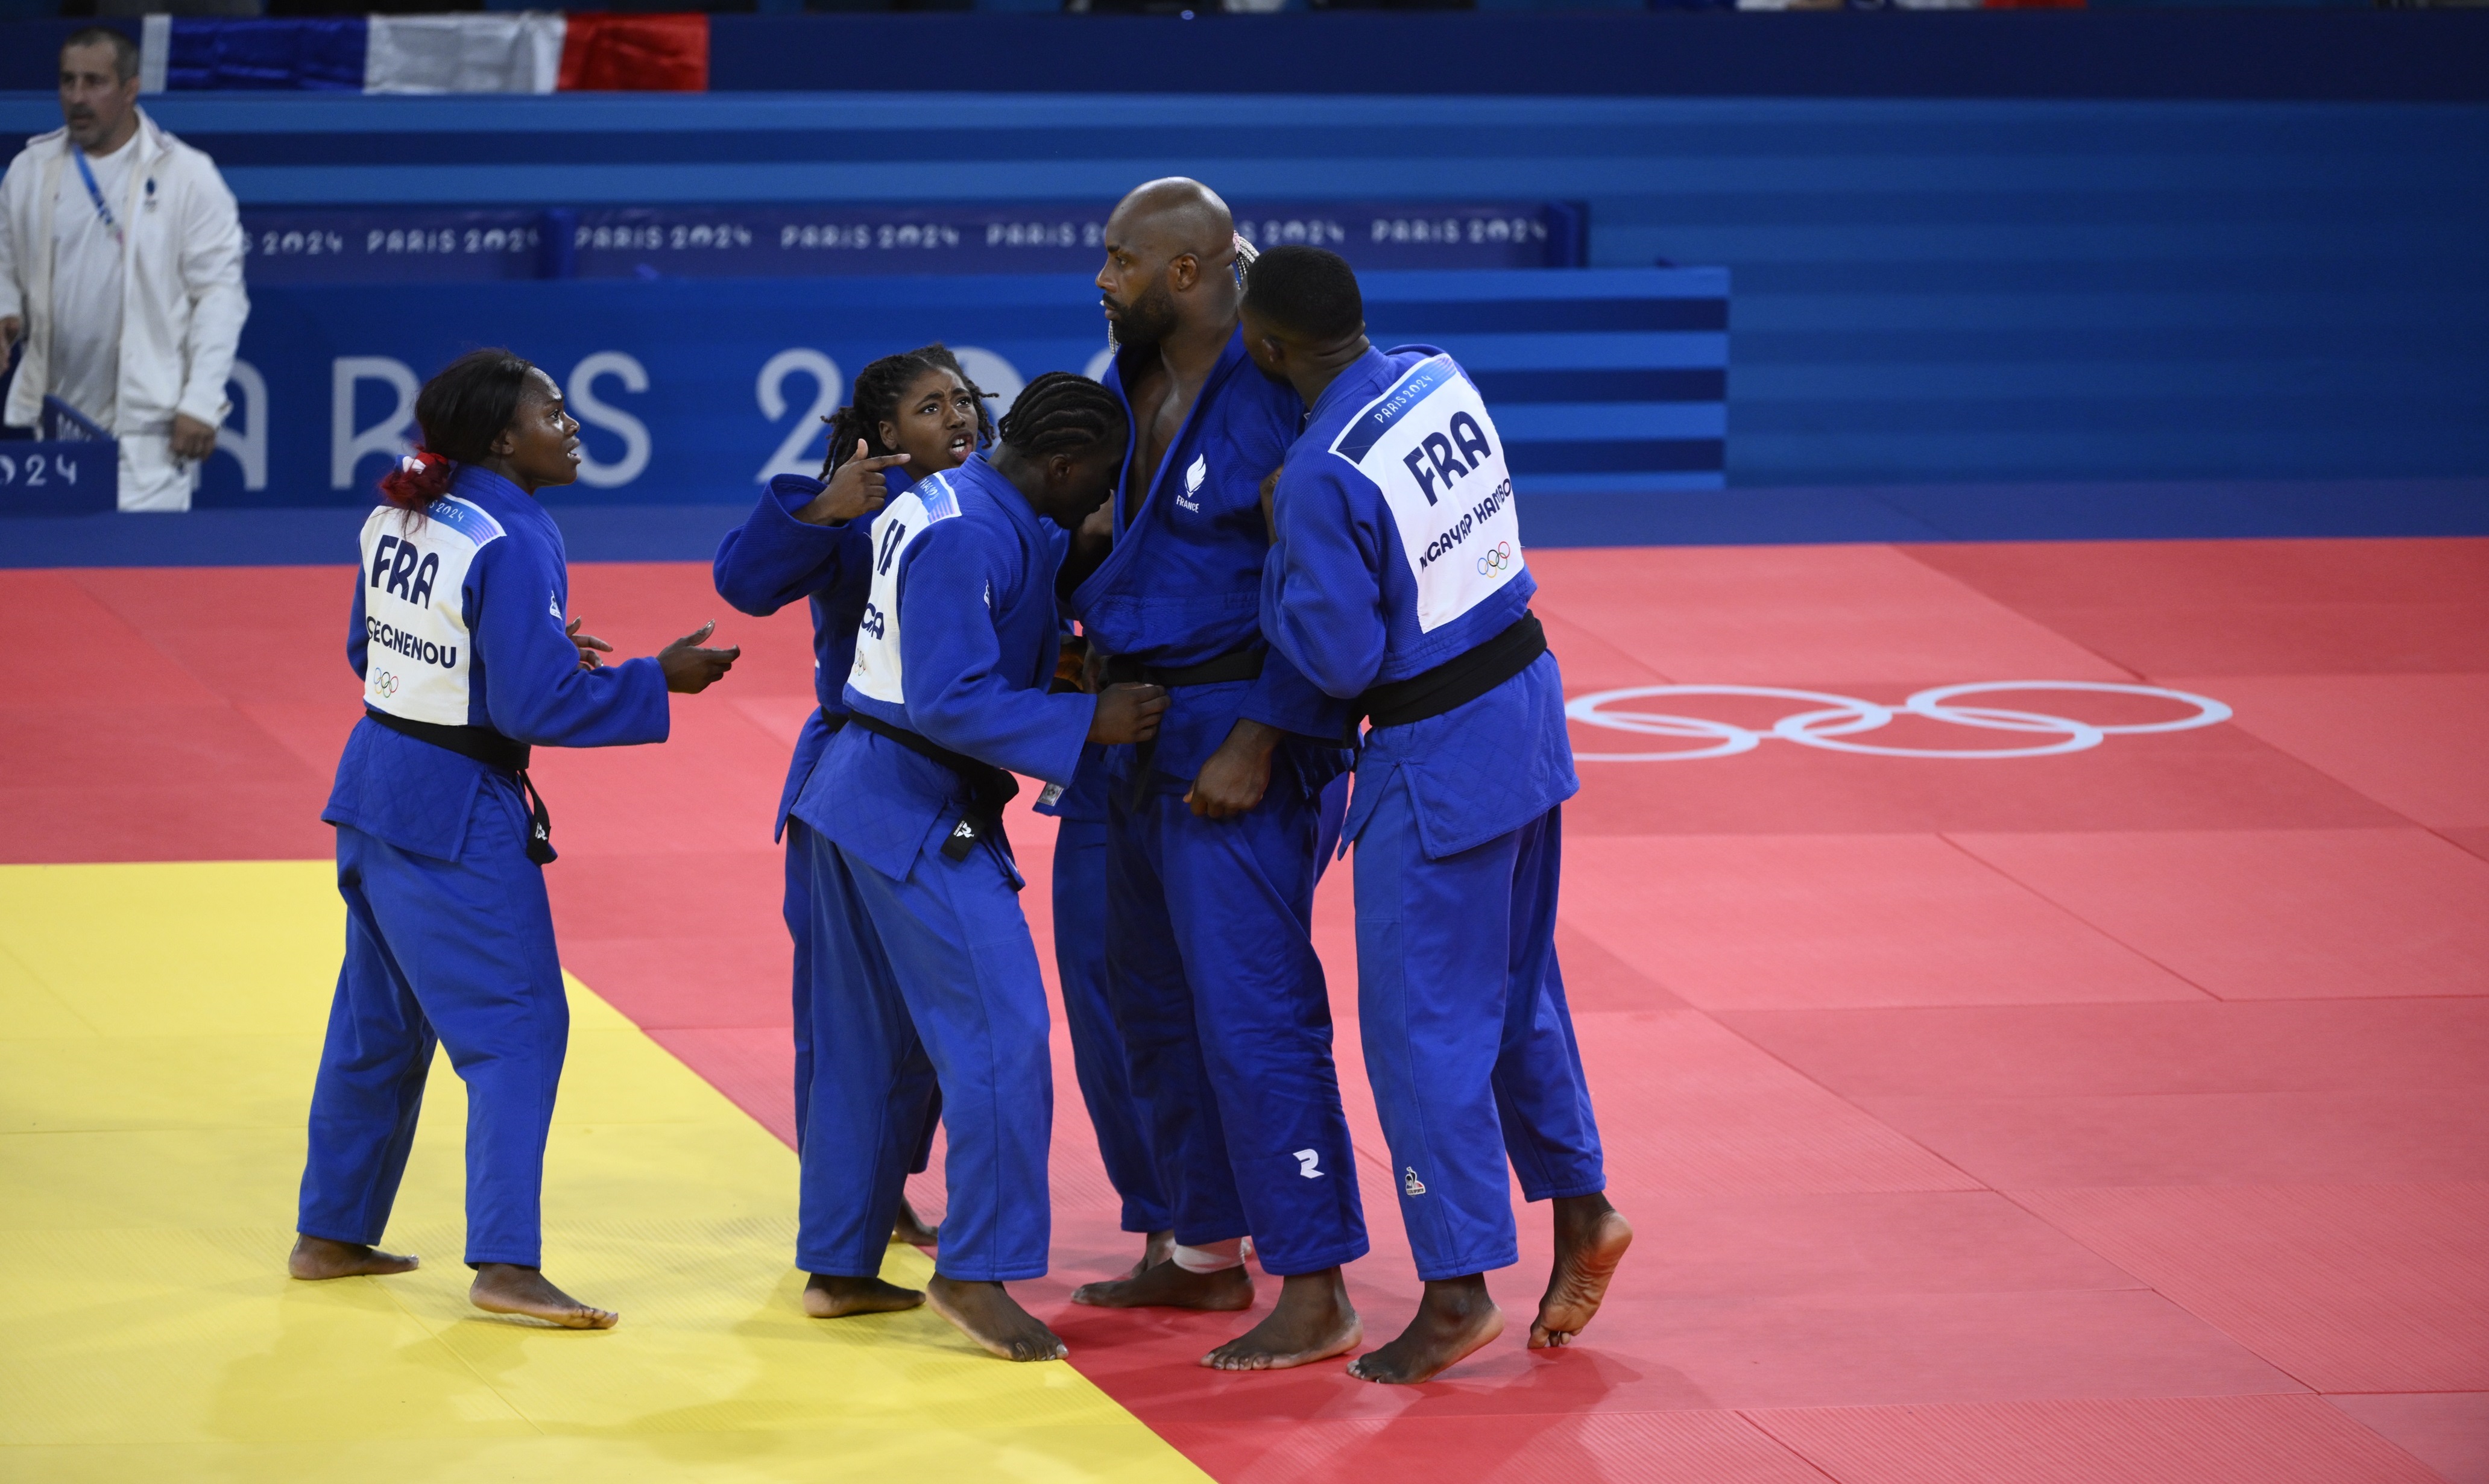     JO 2024 : un Riner immense offre l'or en finale du judo par équipe !!!

